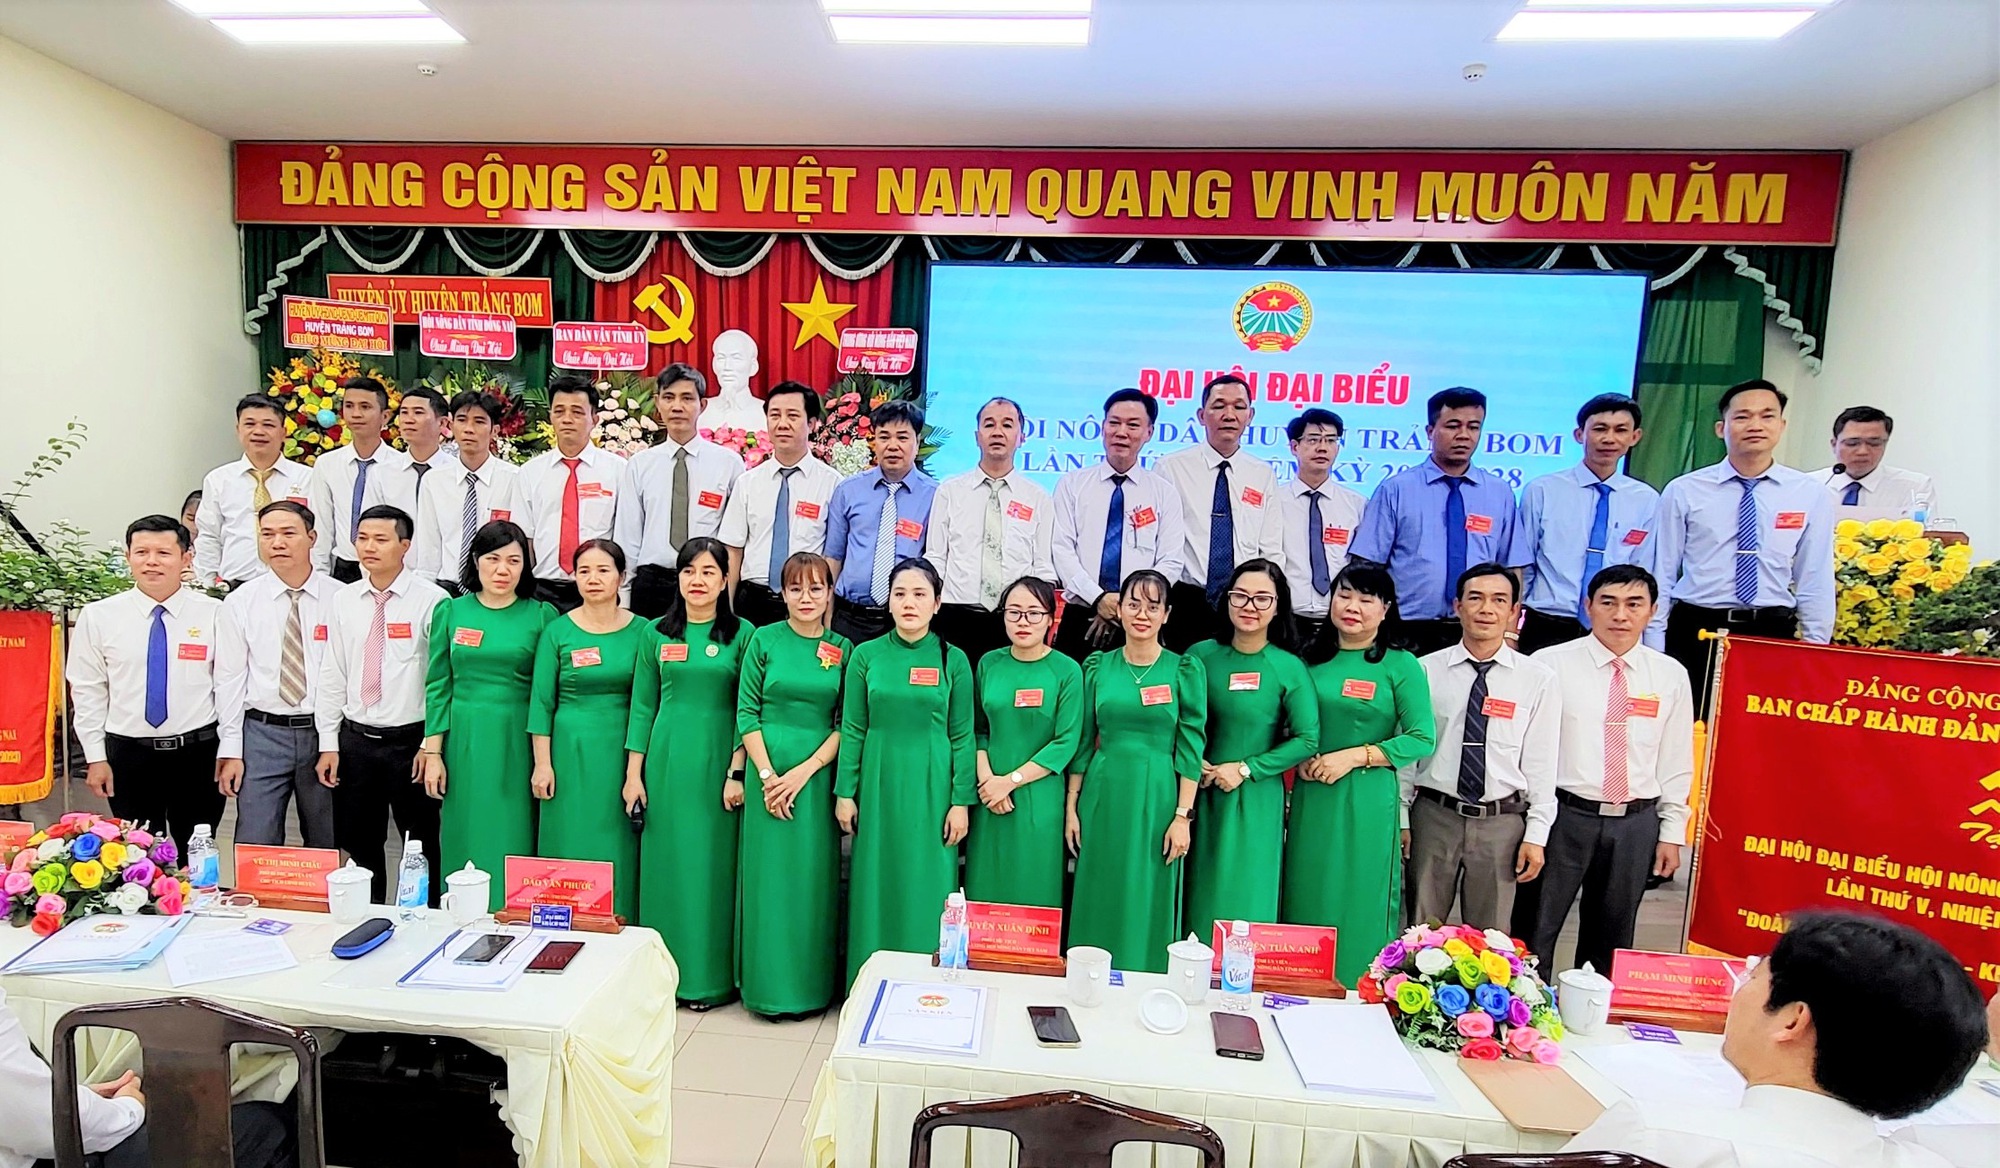 Phó Chủ tịch TƯ Hội NDVN Nguyễn Xuân Định dự Đại hội đại biểu Hội Nông dân huyện Trảng Bom, Đồng Nai - Ảnh 8.